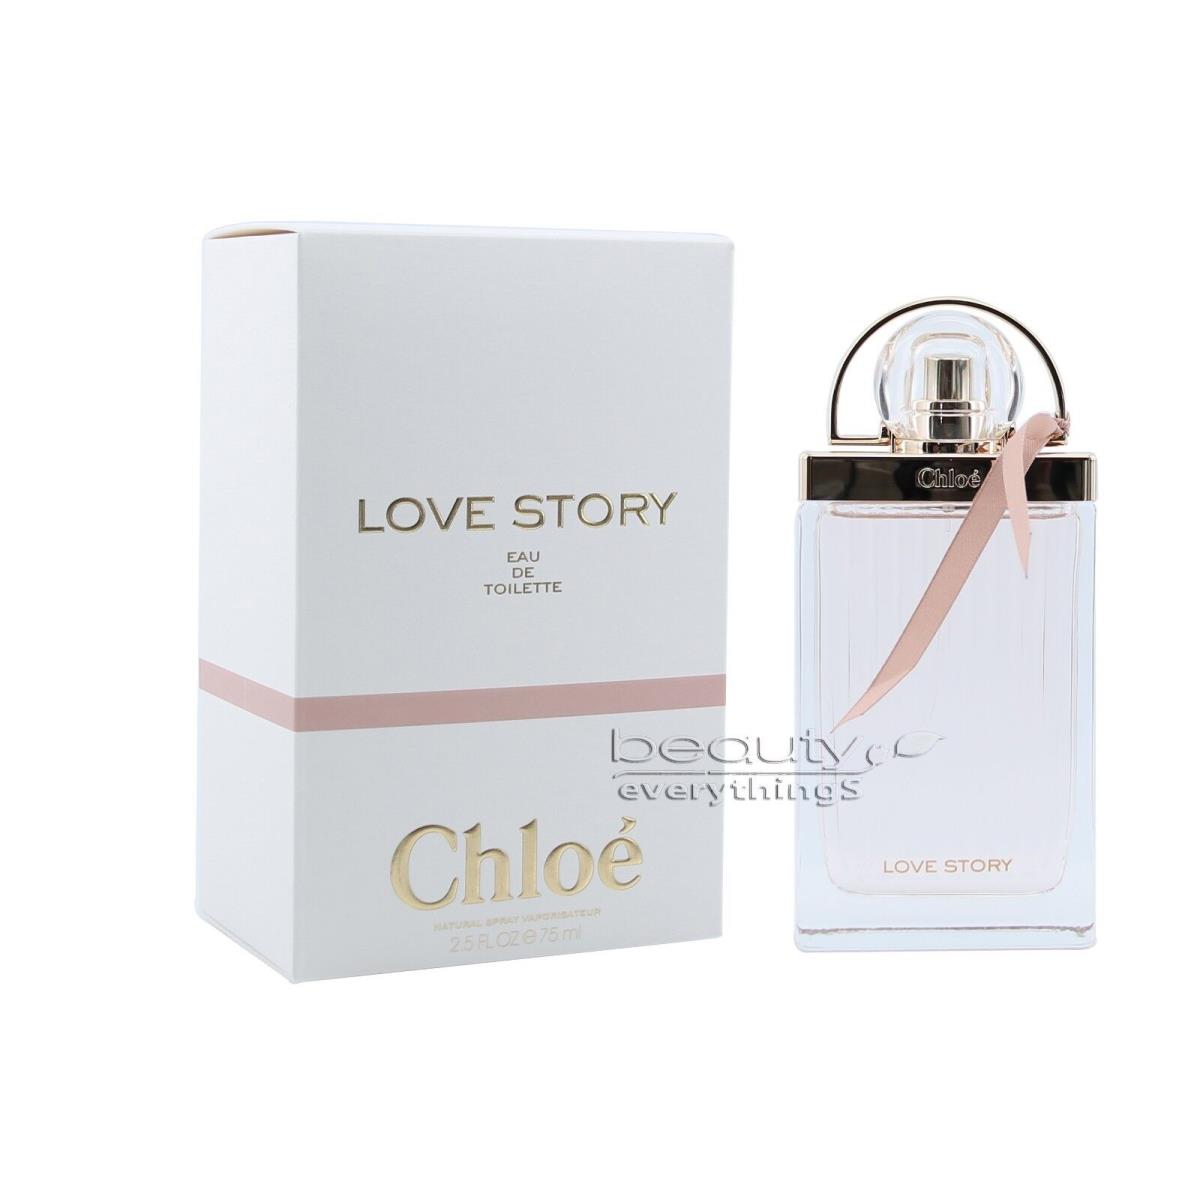 Love Story by Chloe 2.5oz / 75ml Eau De Toilette Spray For Women